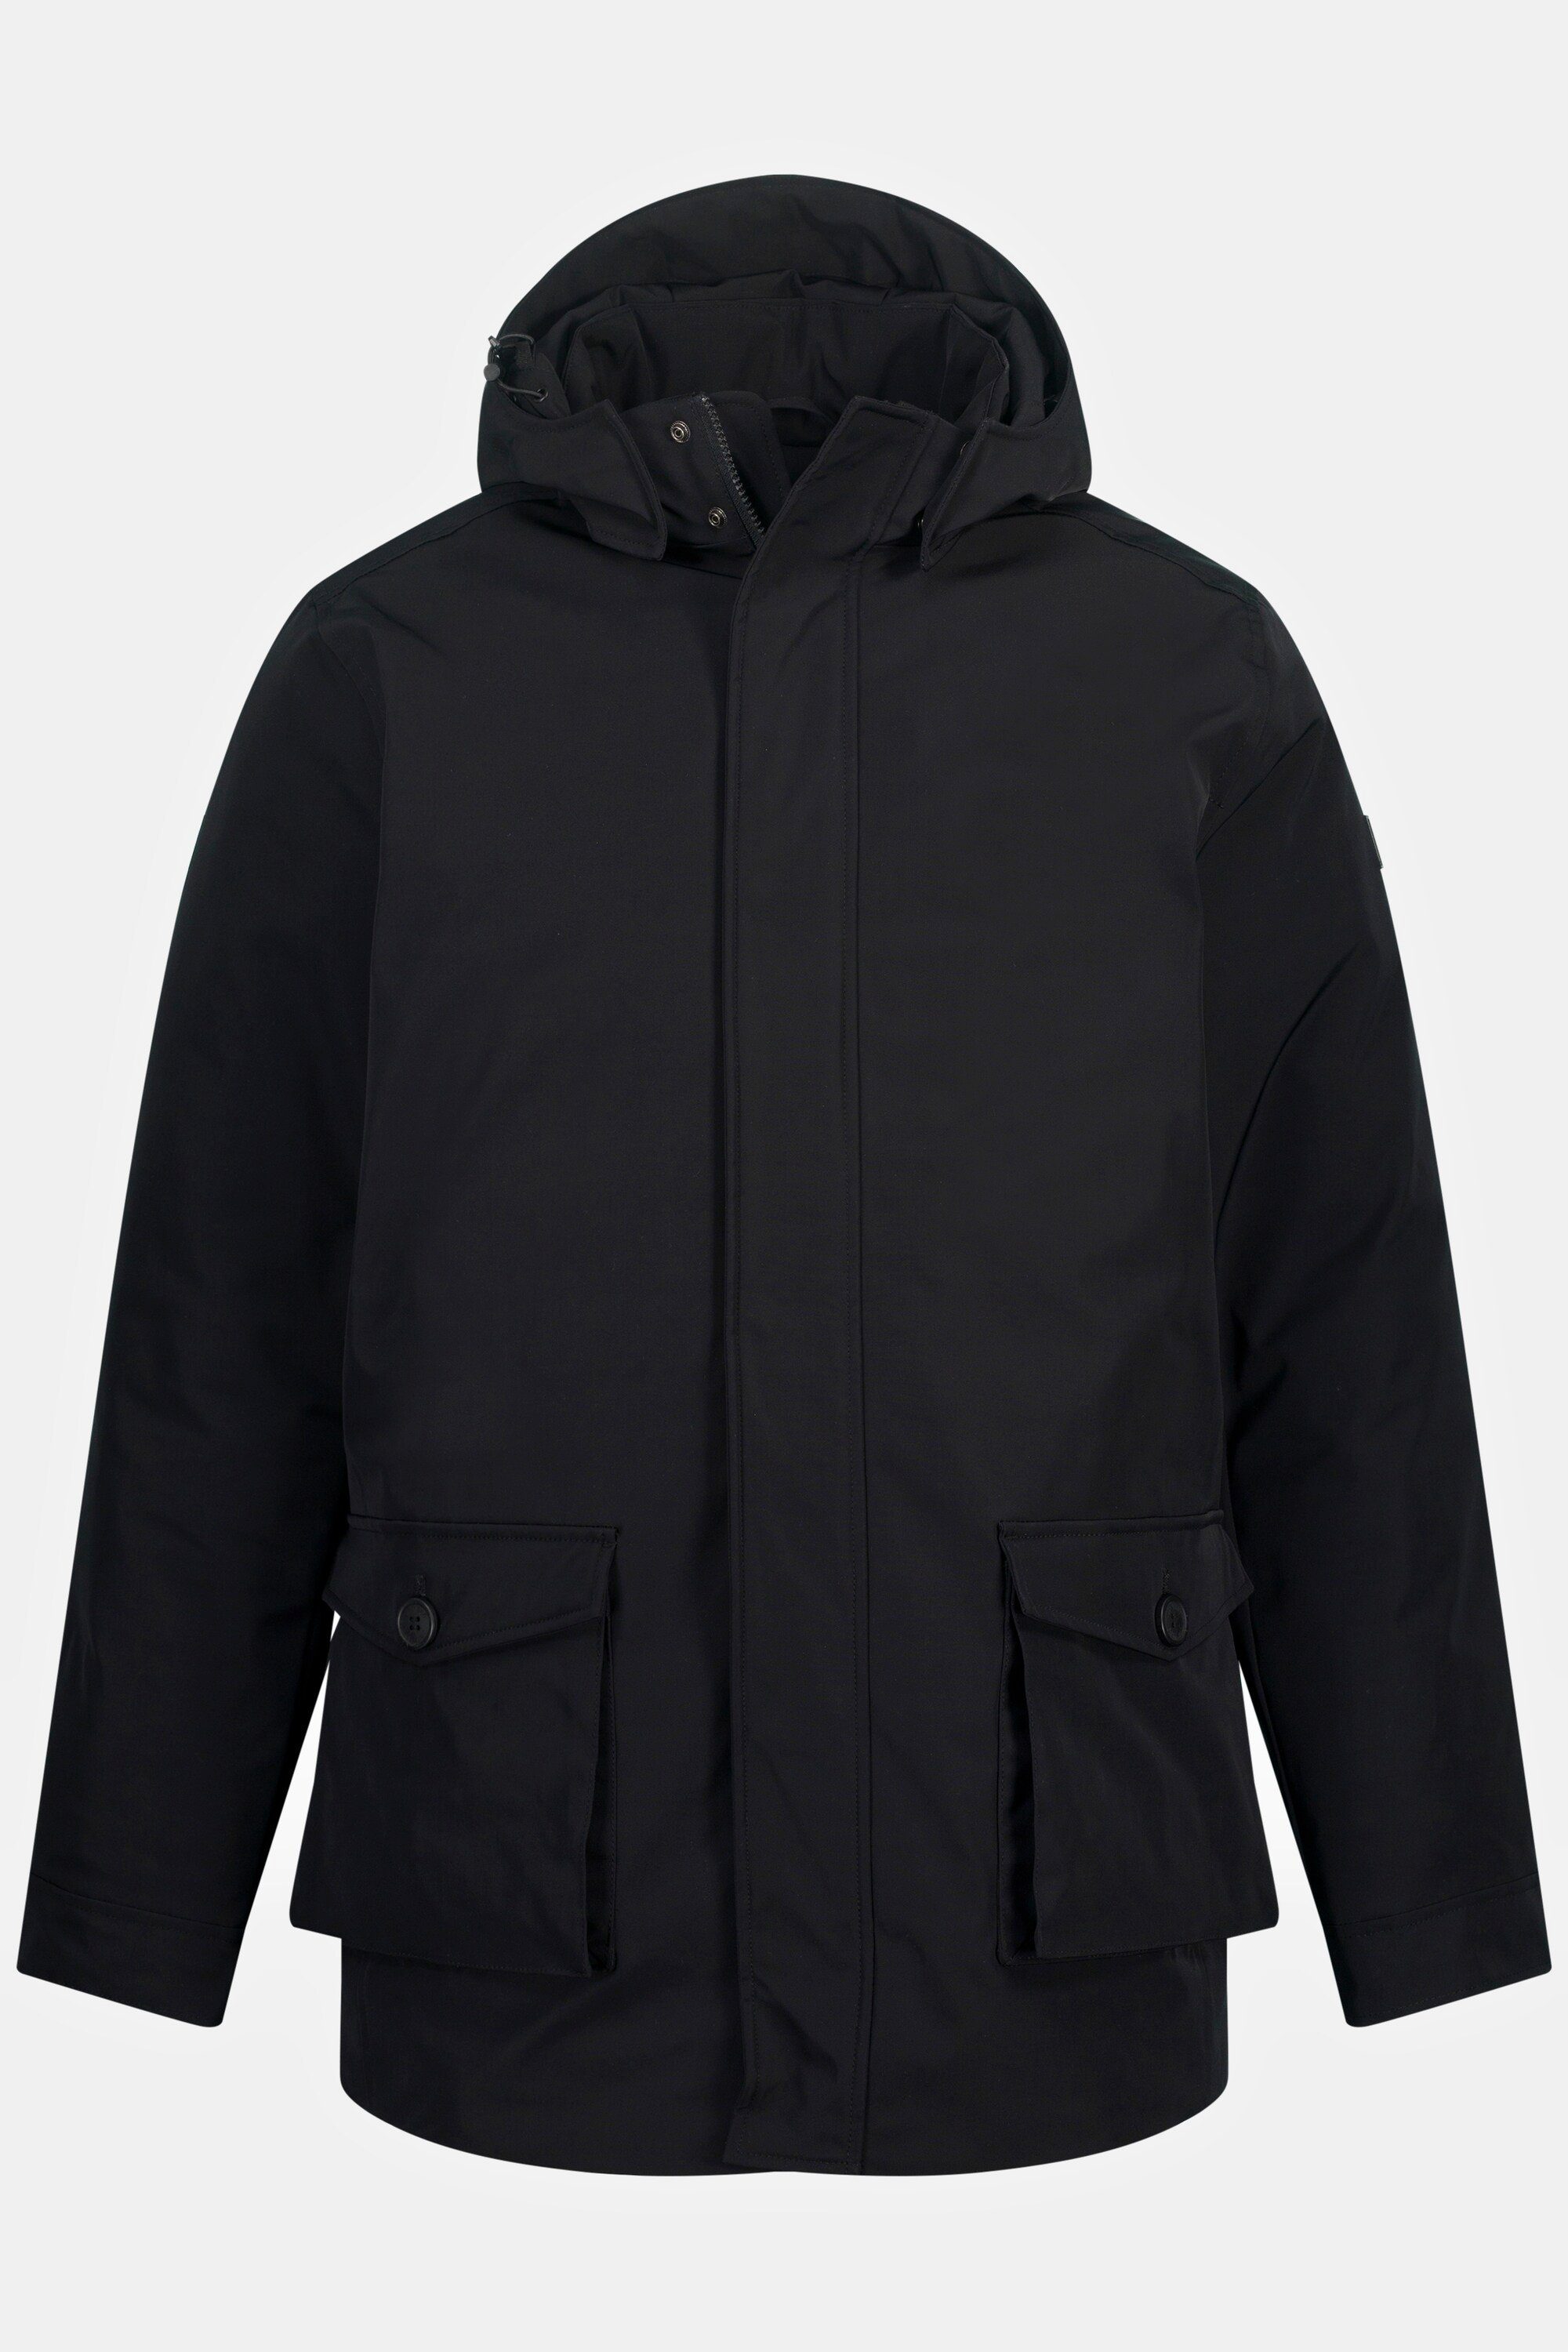 JP1880 Parka Jacke schwarz Outdoor windabweisend wasserabweisend